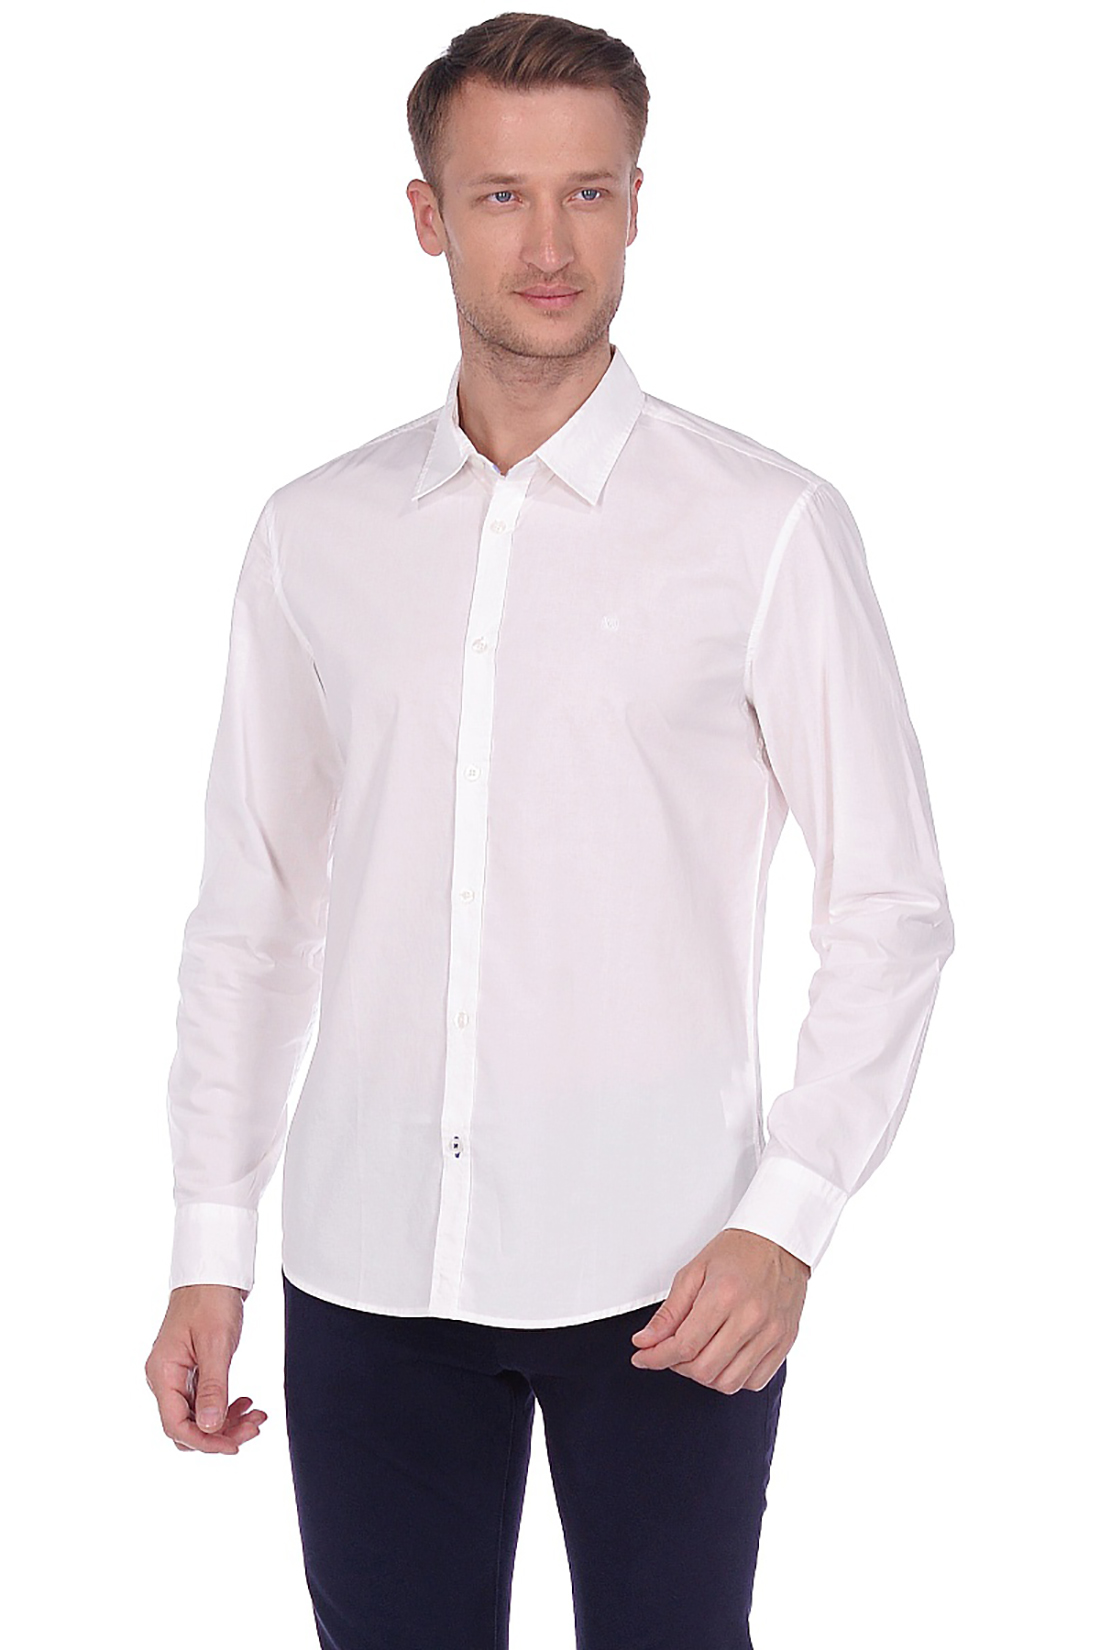 Рубашка из хлопкового поплина (арт. baon B669519), размер L, цвет белый